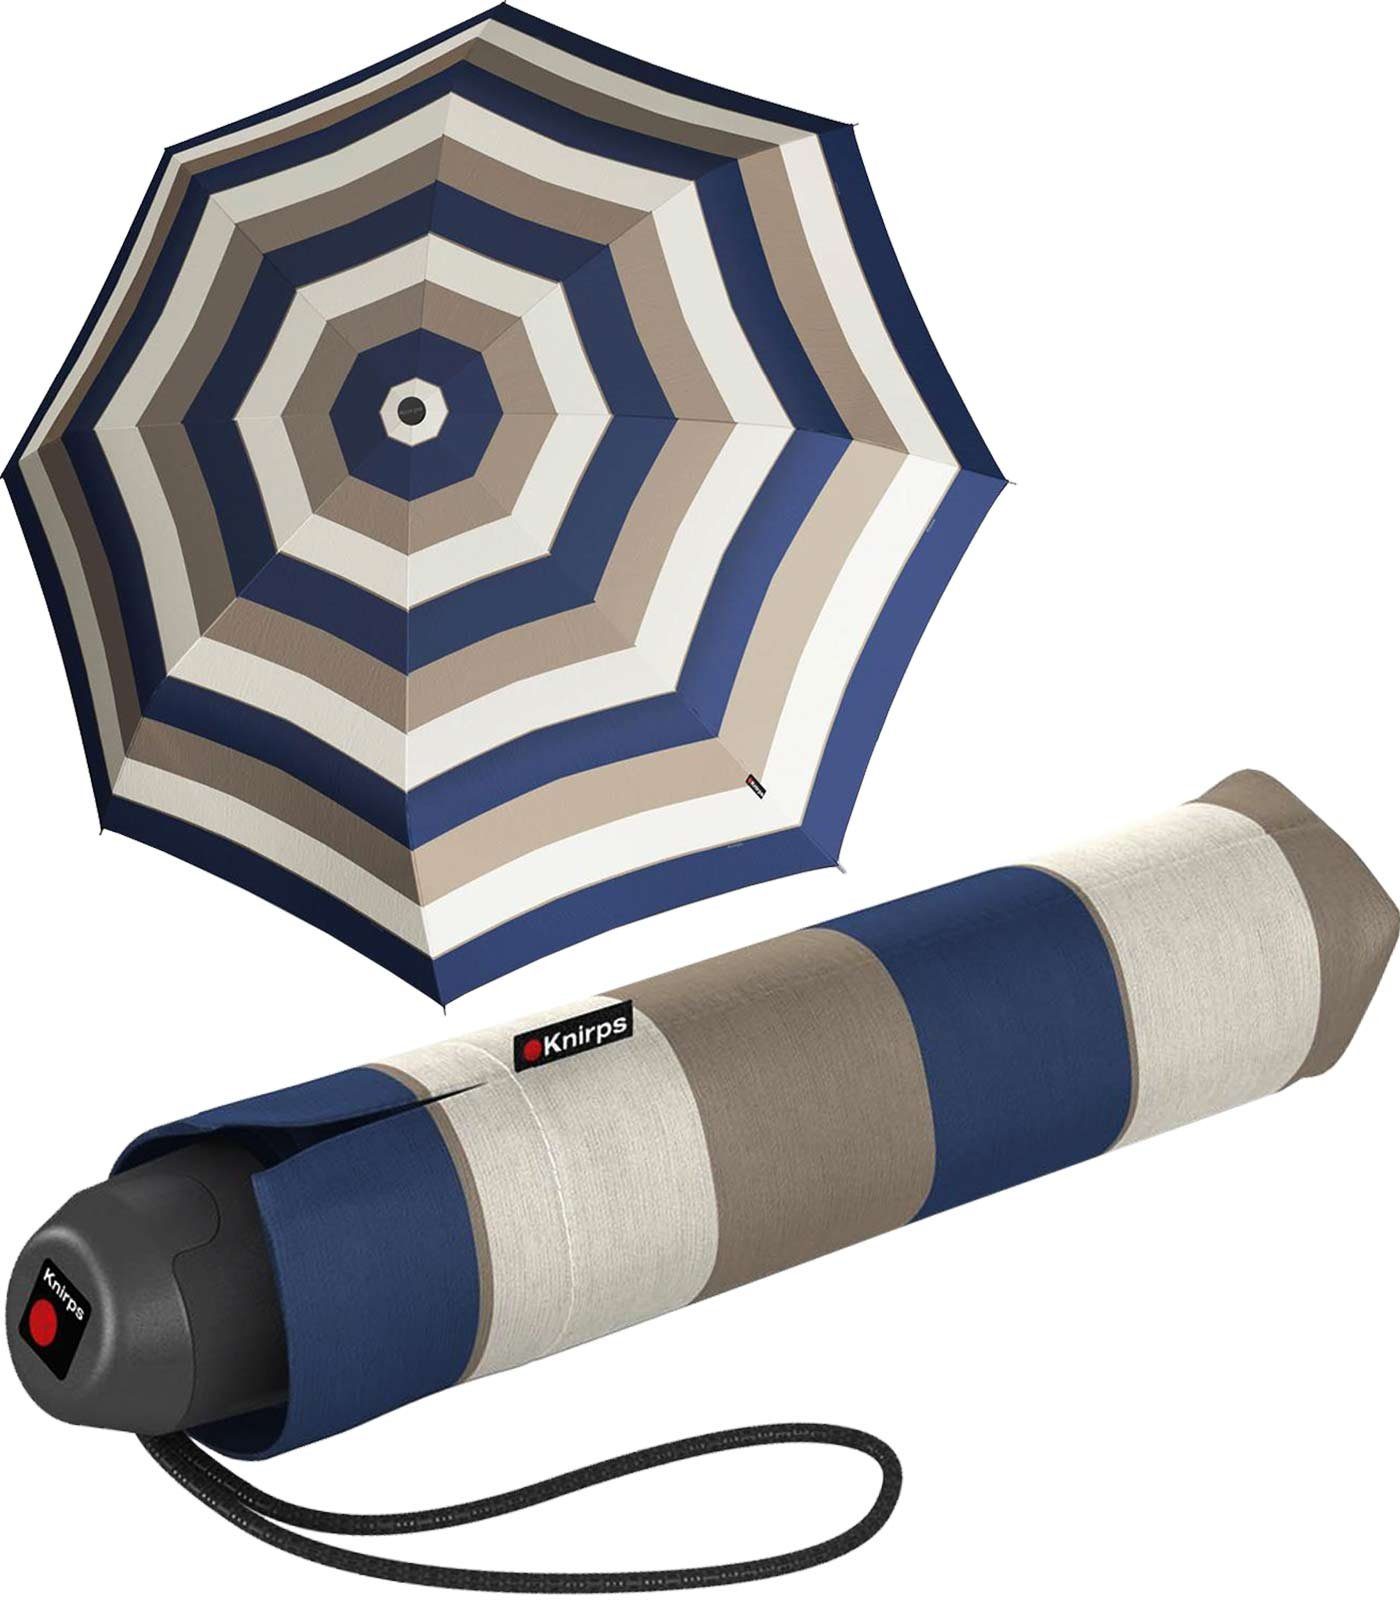 E.051 der für Stripe den blau-braun-creme red, leichter Alltag Handöffner Taschenschirm Knirps® Taschenregenschirm kleine Damen-Schirm,